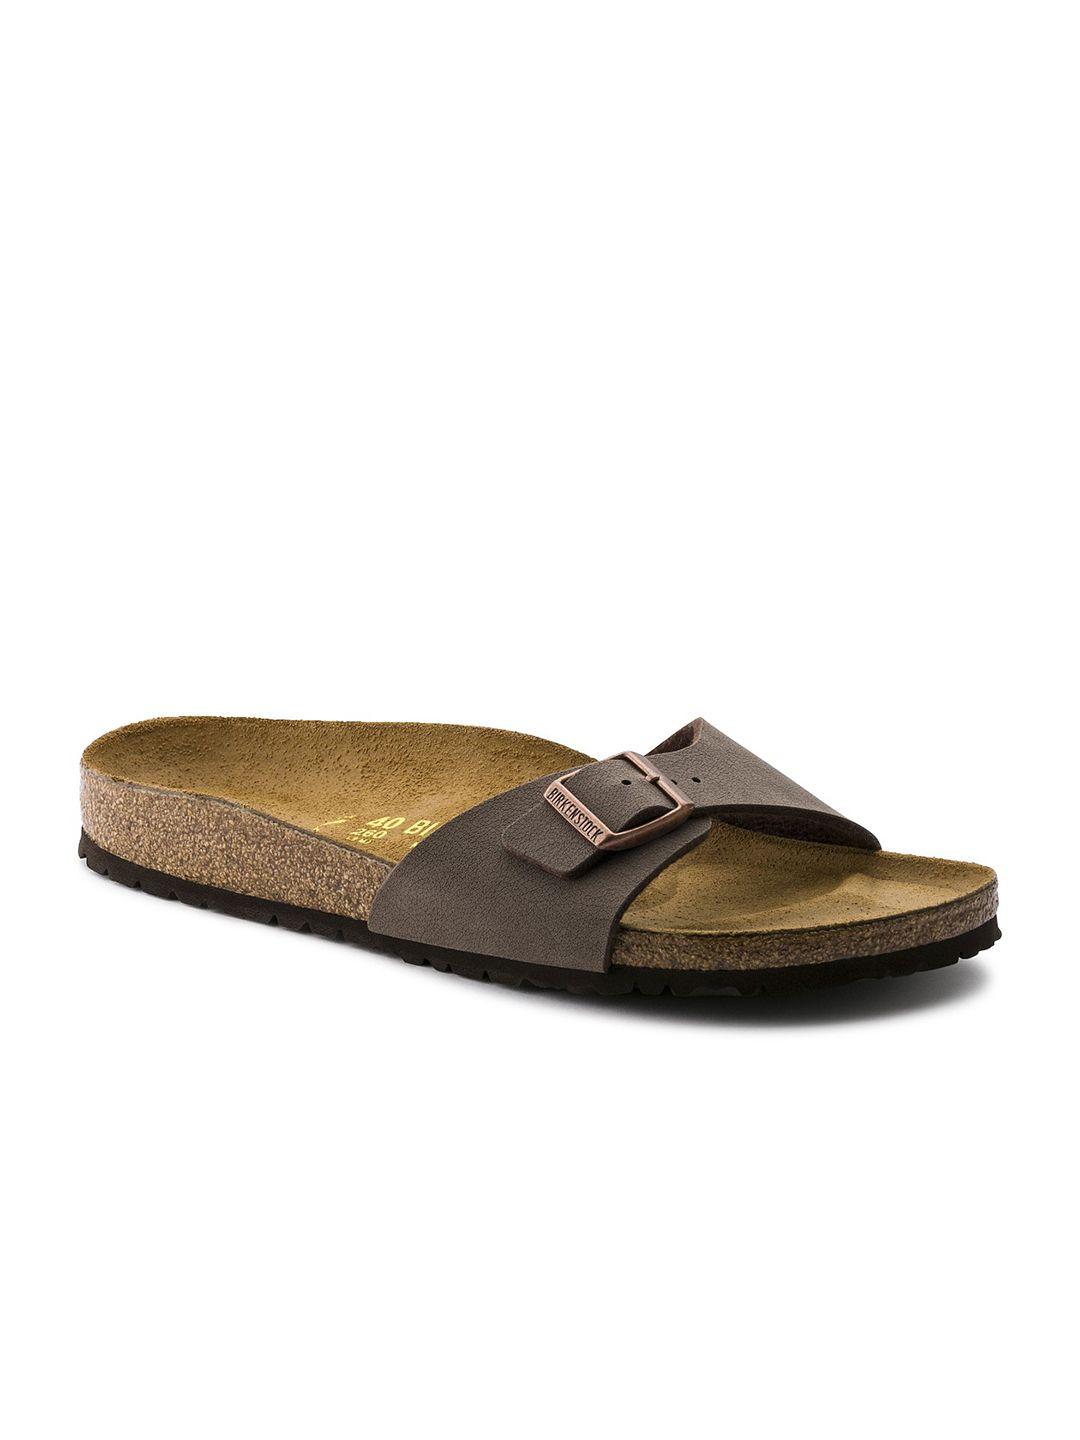 birkenstock unisex brown madrid birko-flor nubuck narrow width sandals